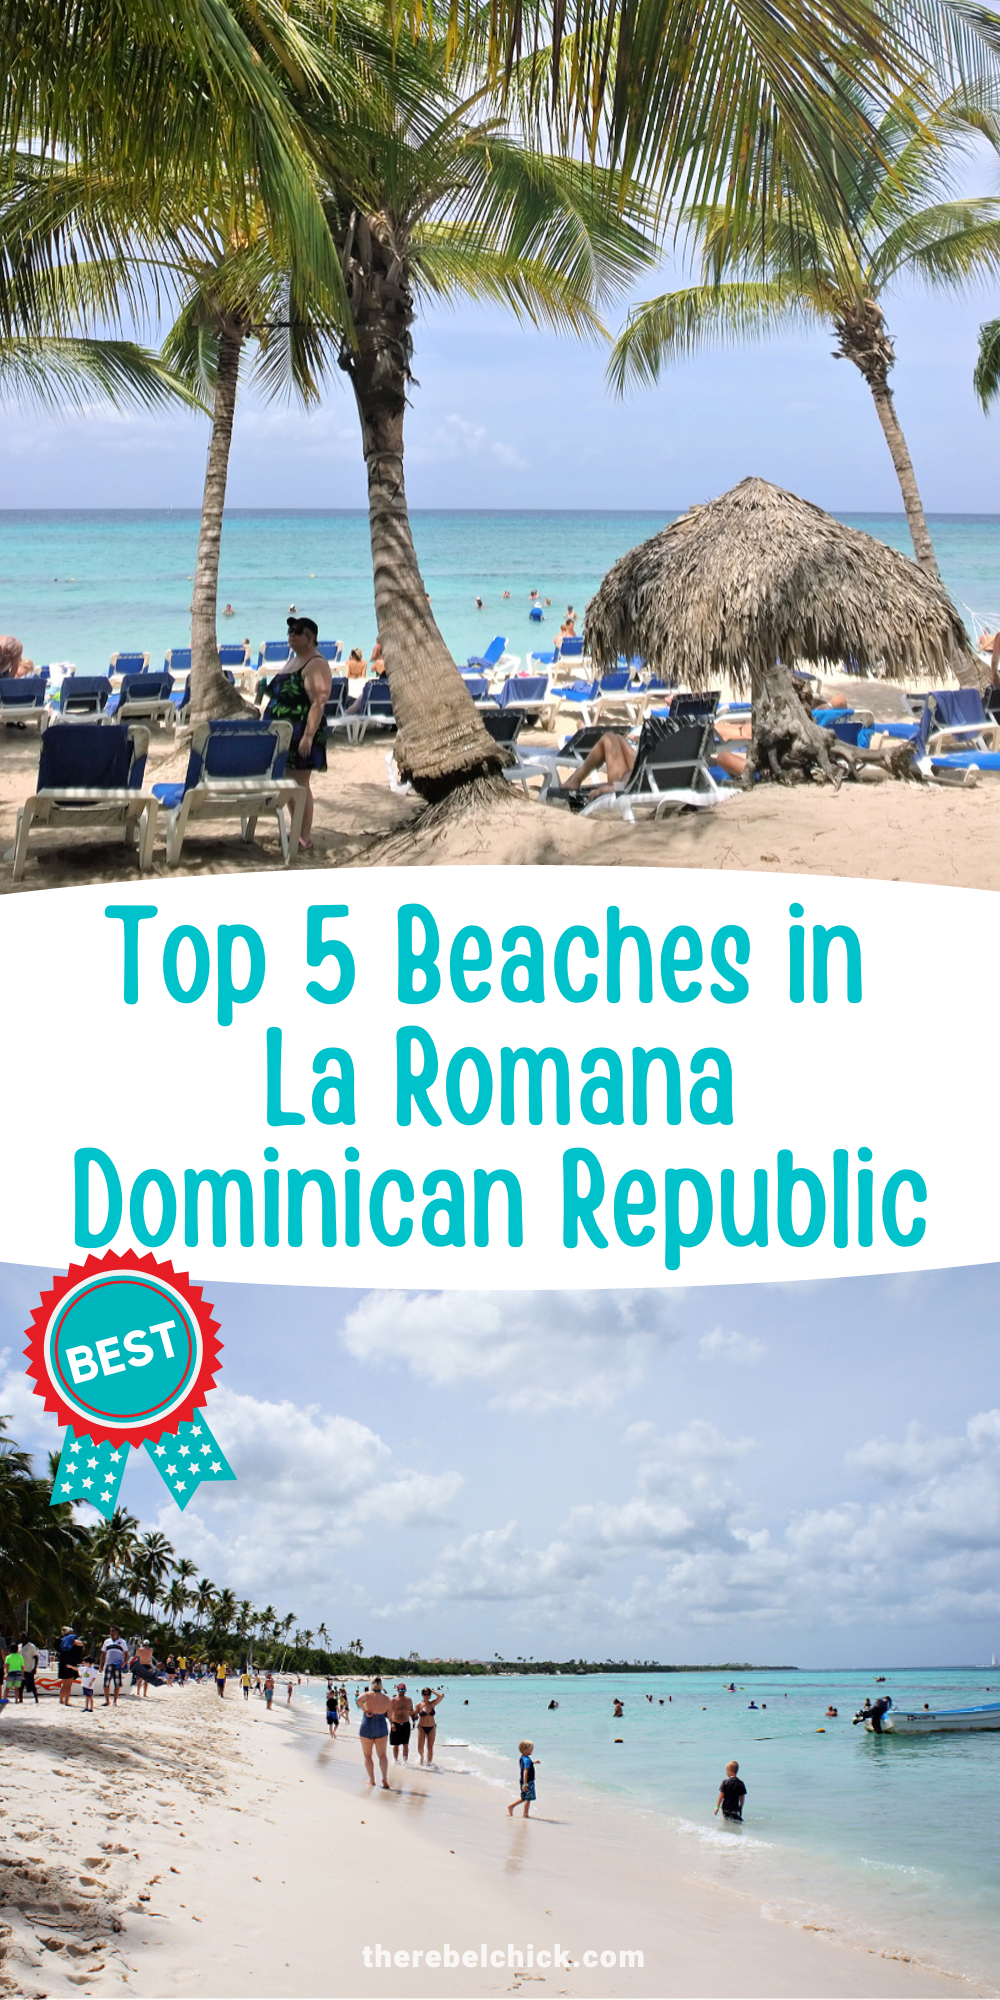 Top 5 Beaches in La Romana, Dominican Republic